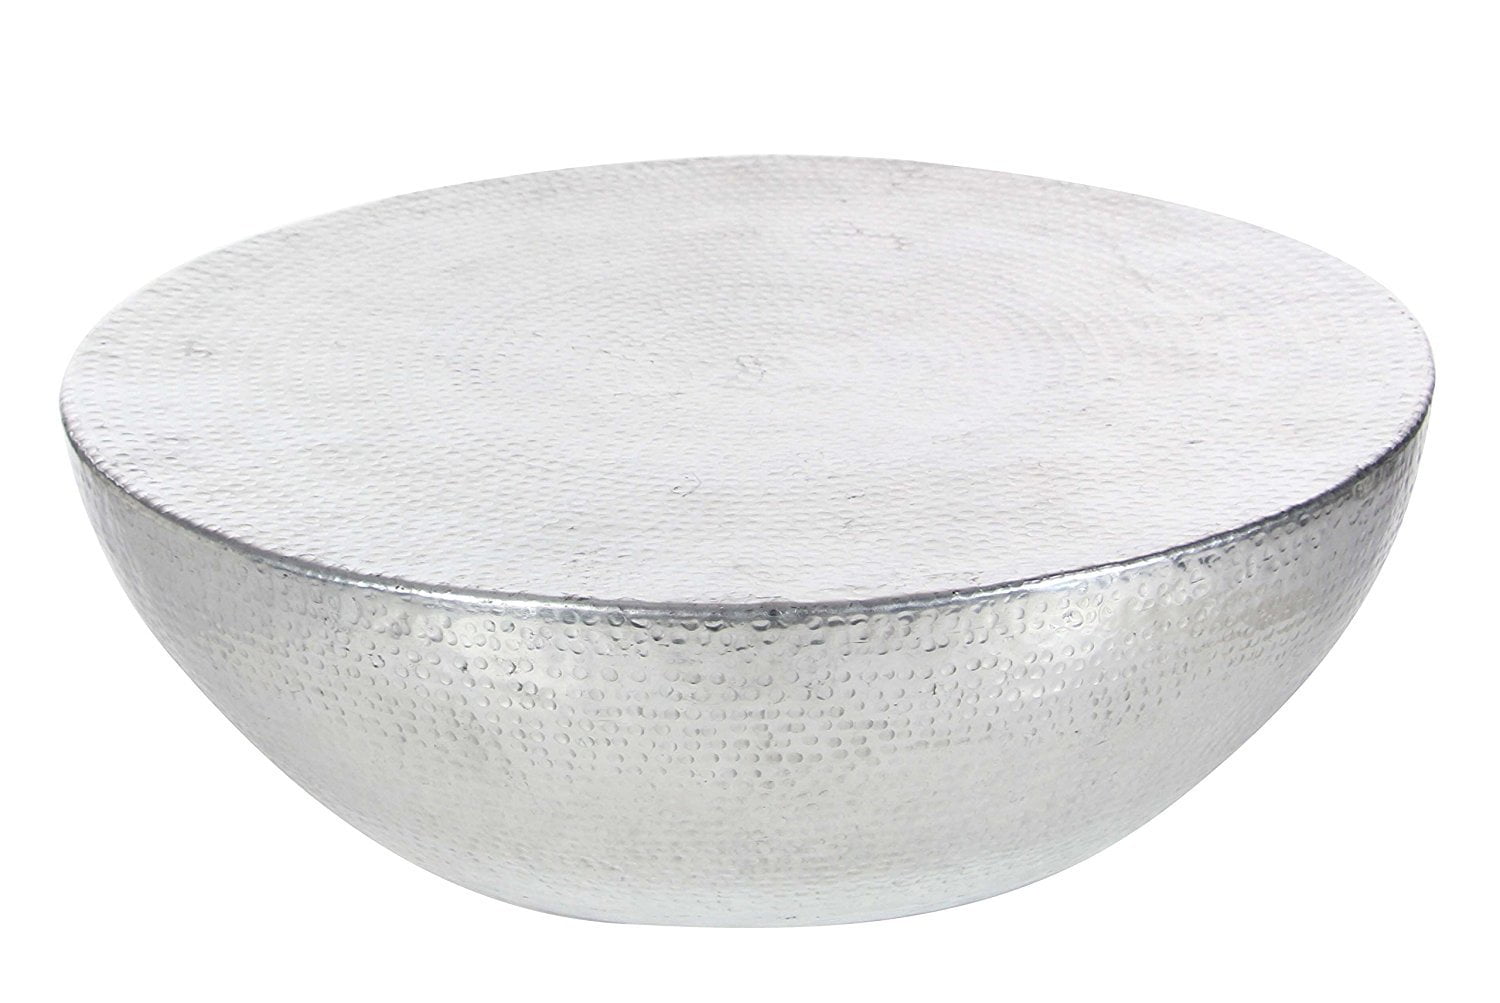 Deco 79 53938 Inverted Dome Aluminum Coffee Table, Silver - Walmart.com